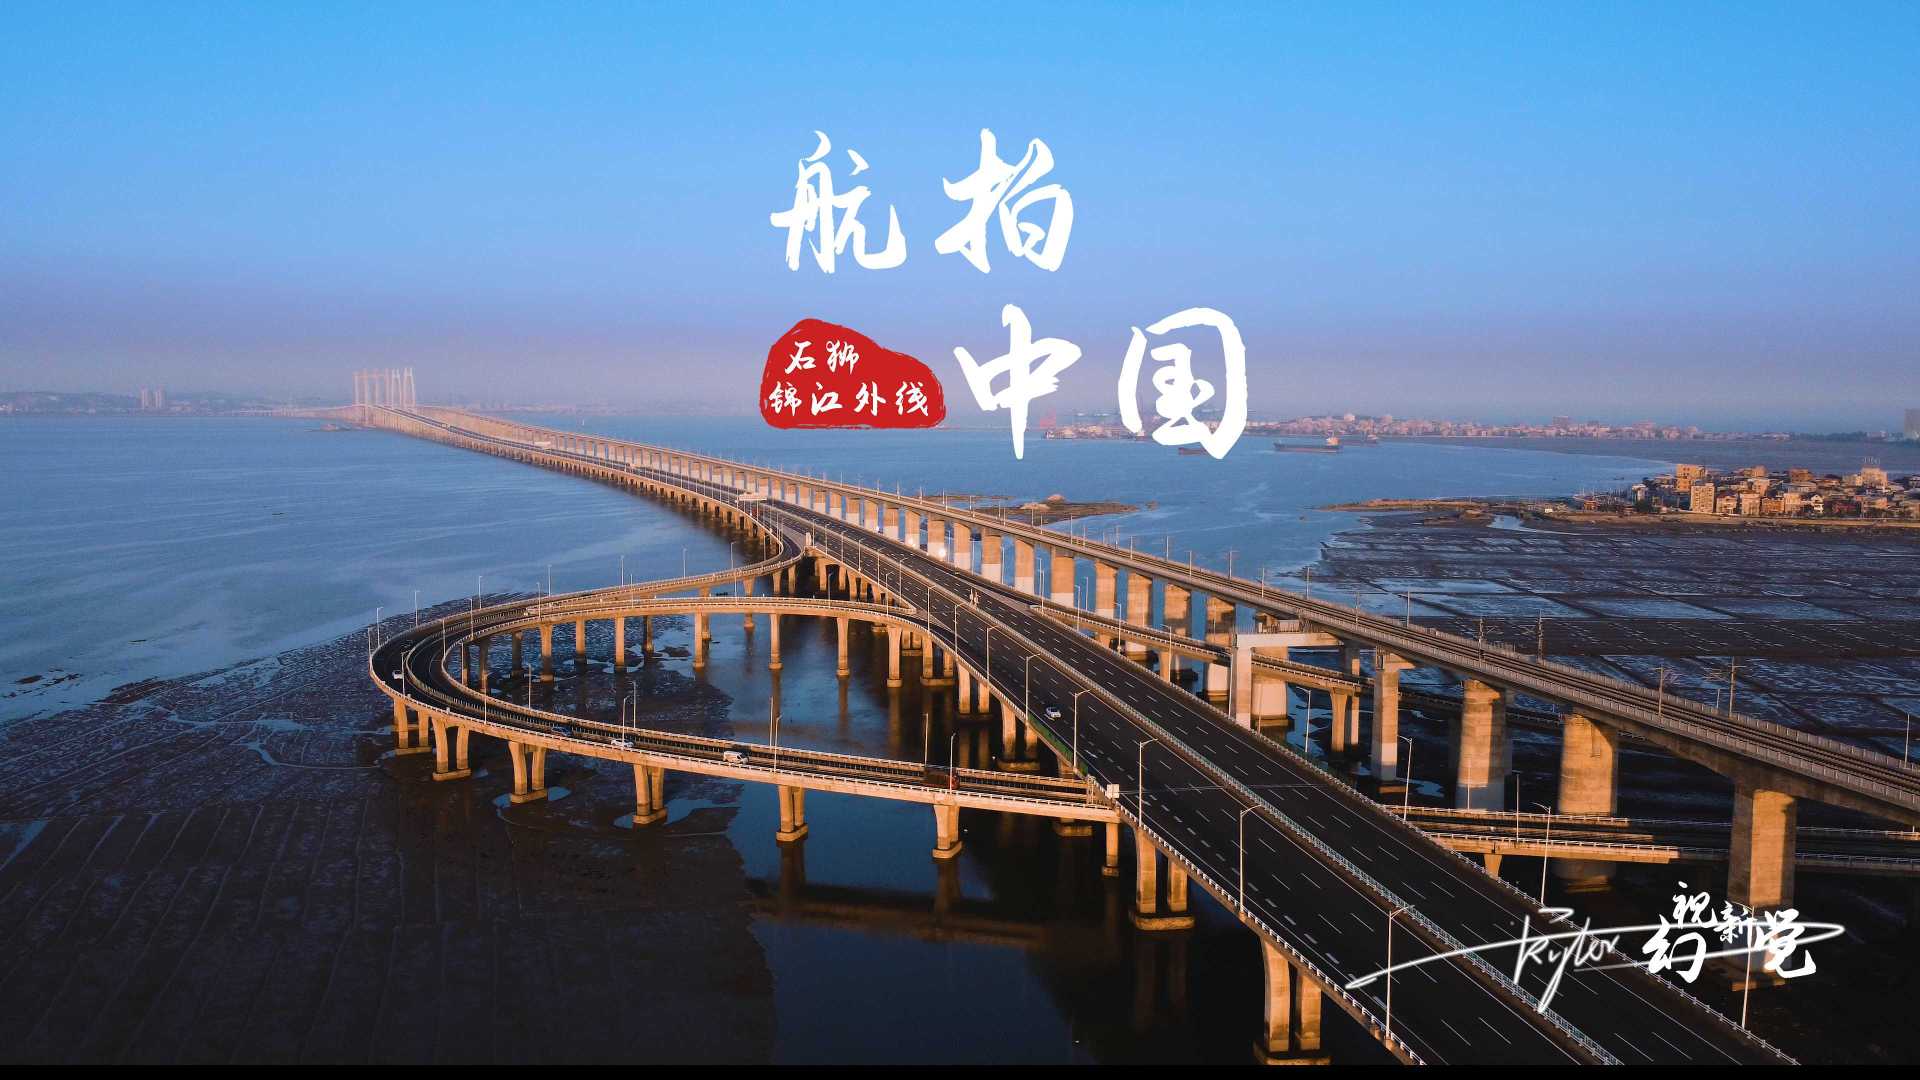 【出售素材】4K航拍素材 泉州湾大桥-追动车